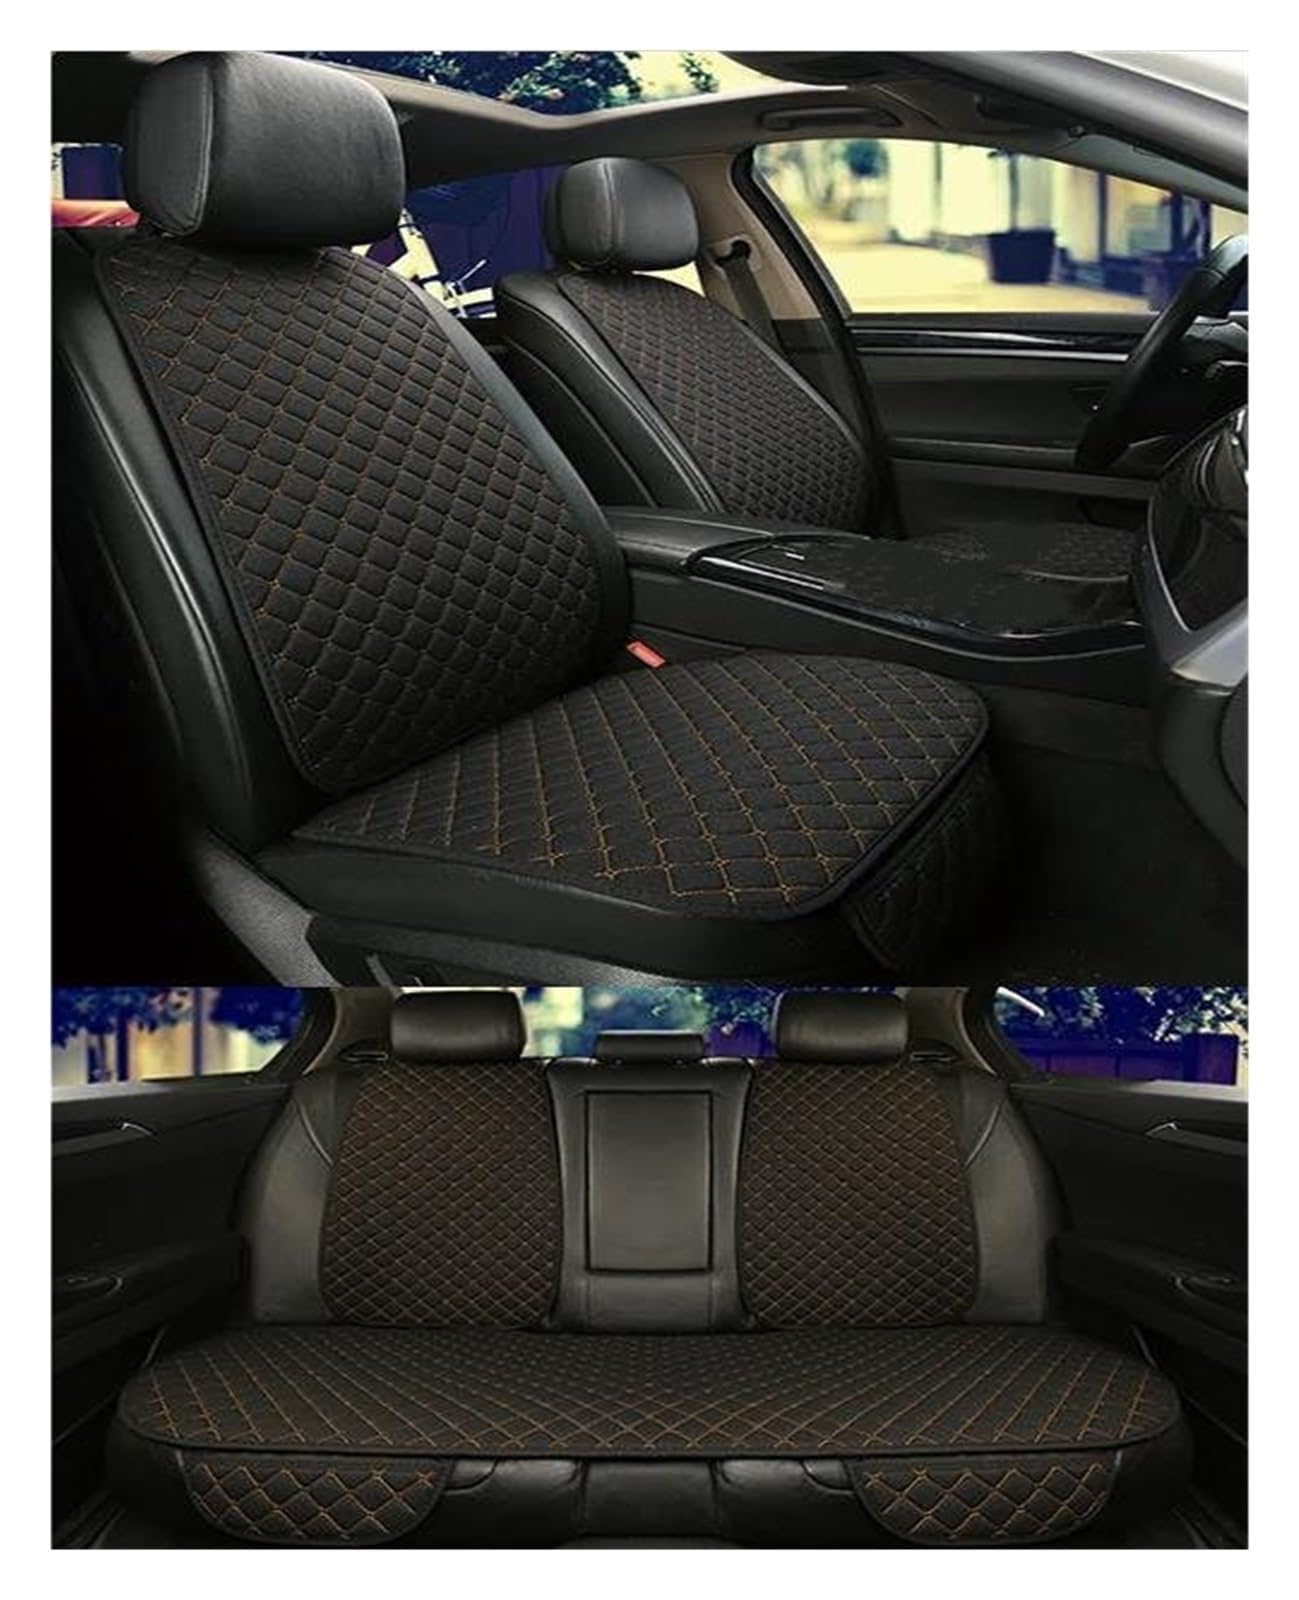 ZWBC Auto-Sitzbezüge Sets für 𝙈𝙚𝙧𝙘𝙚𝙙𝙚𝙨-𝘽𝙚𝙣𝙯 X167 GLS 2020-,Auto Sitzbezüge Sets Wasserdicht Rutschfester Autositzkissen Innenraum Zubehör,D von ZWBC